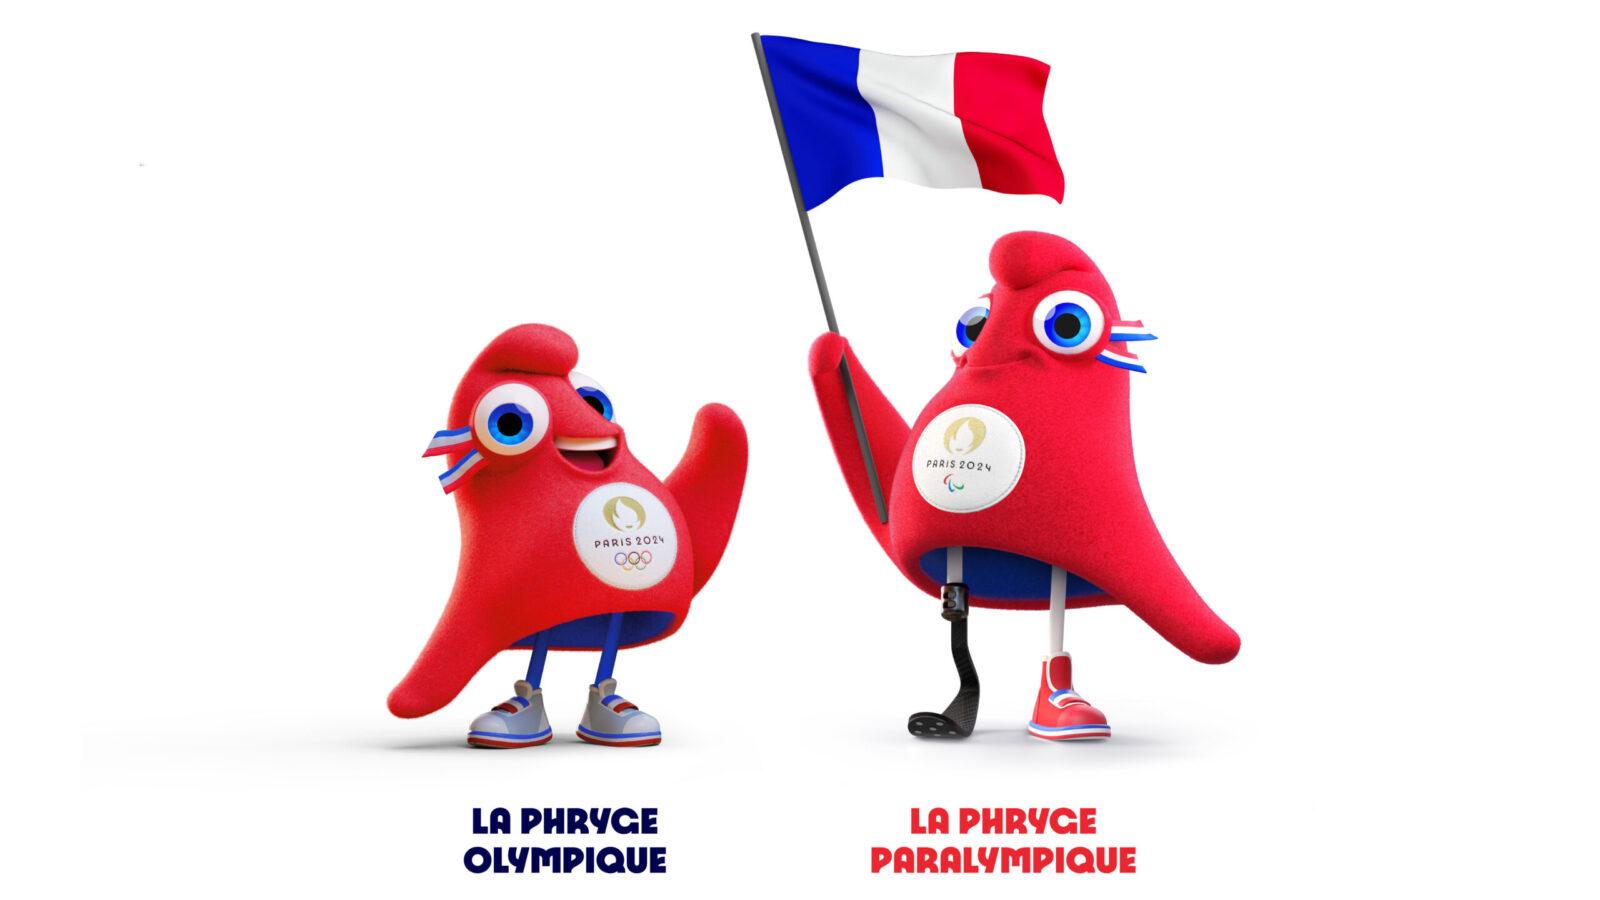 Das olympische und das paraolympische Maskottchen von Paris 2024